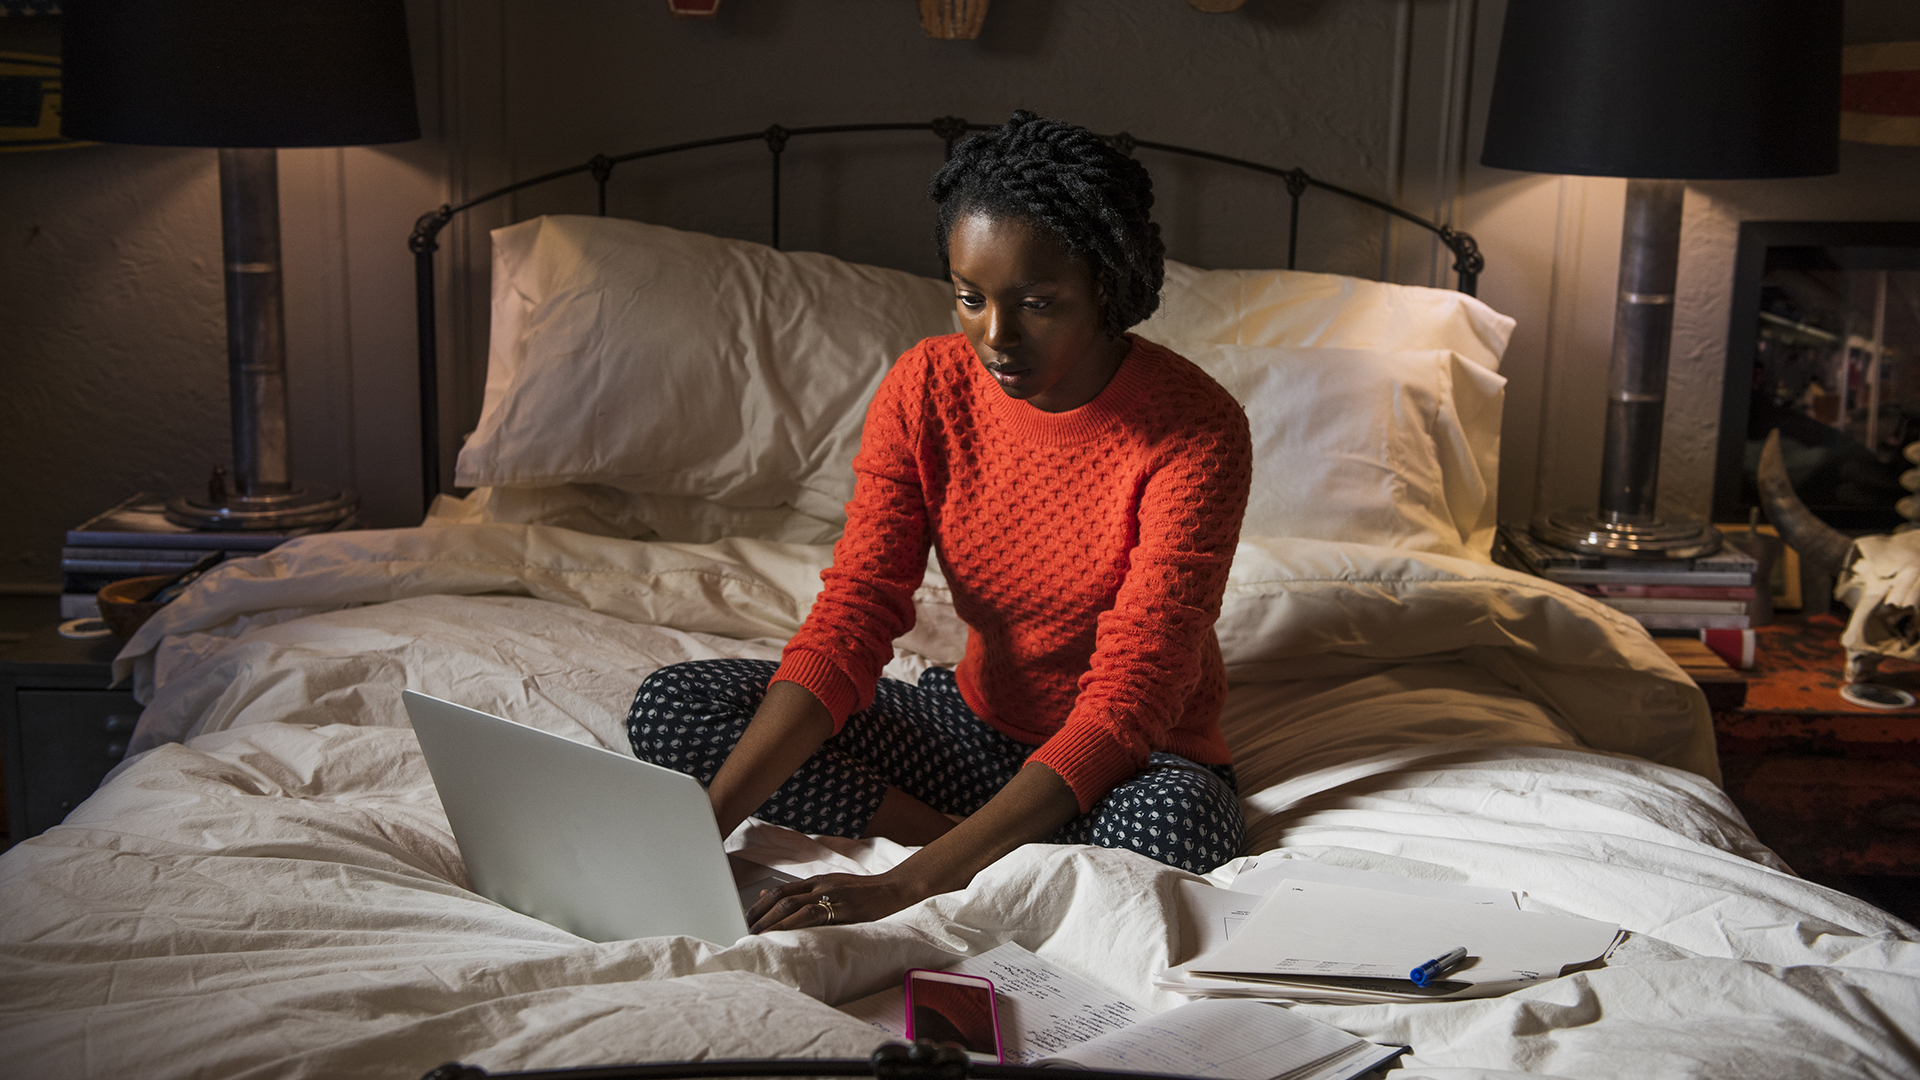 Una mujer sentada en una cama en una habitación oscura, escribiendo en una computadora portátil